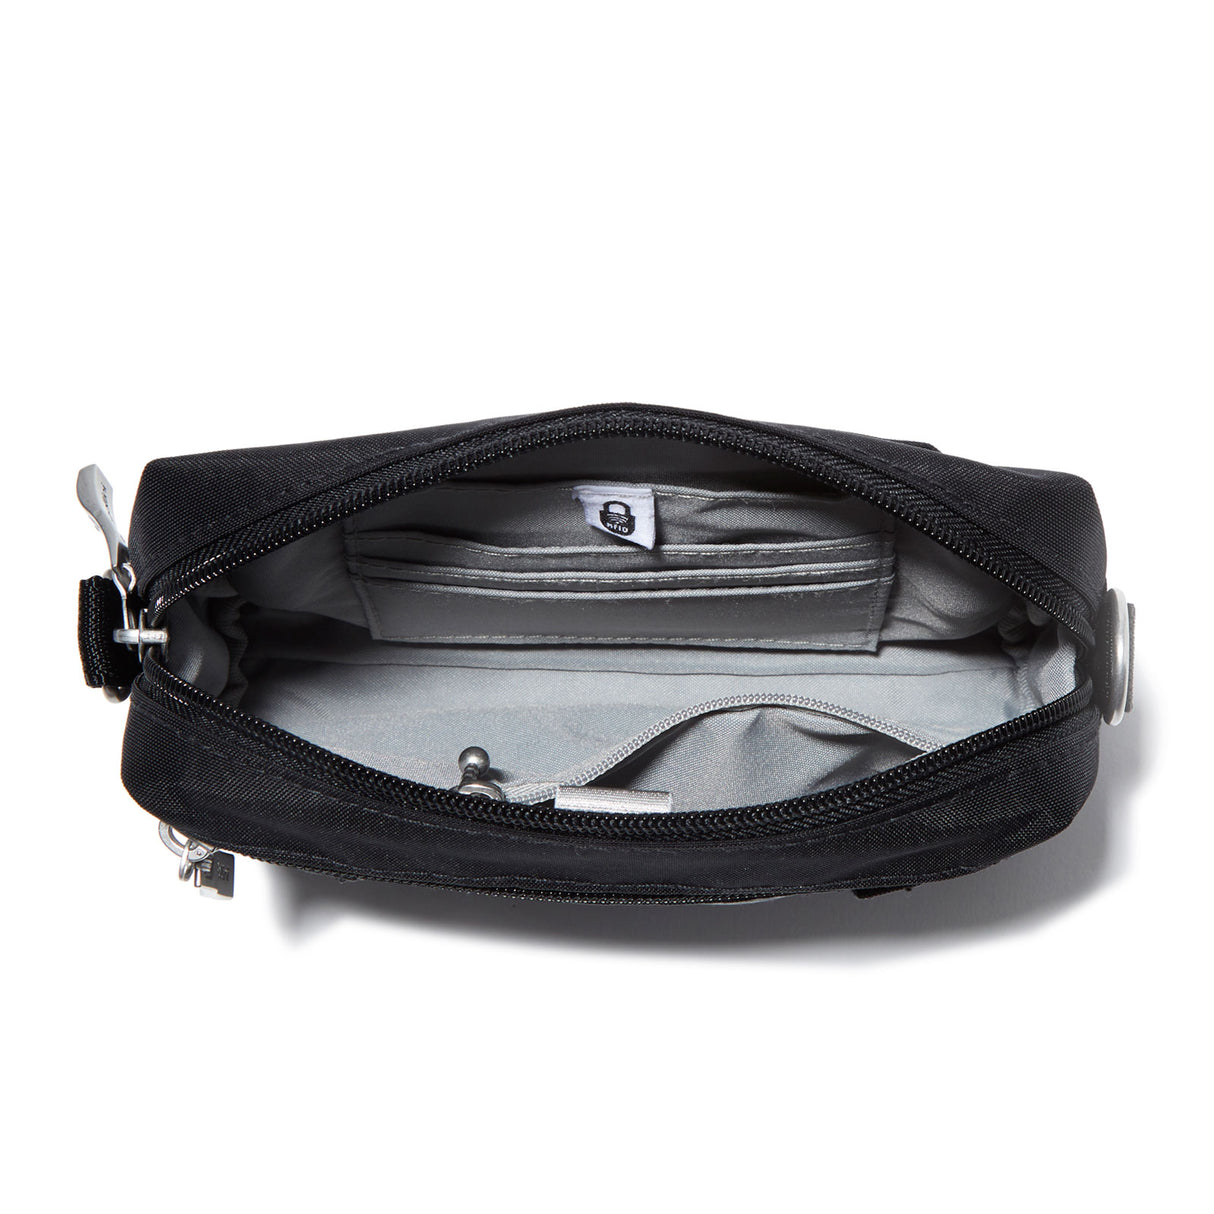 Baggallini 2-in-1 Convertible Belt Bag